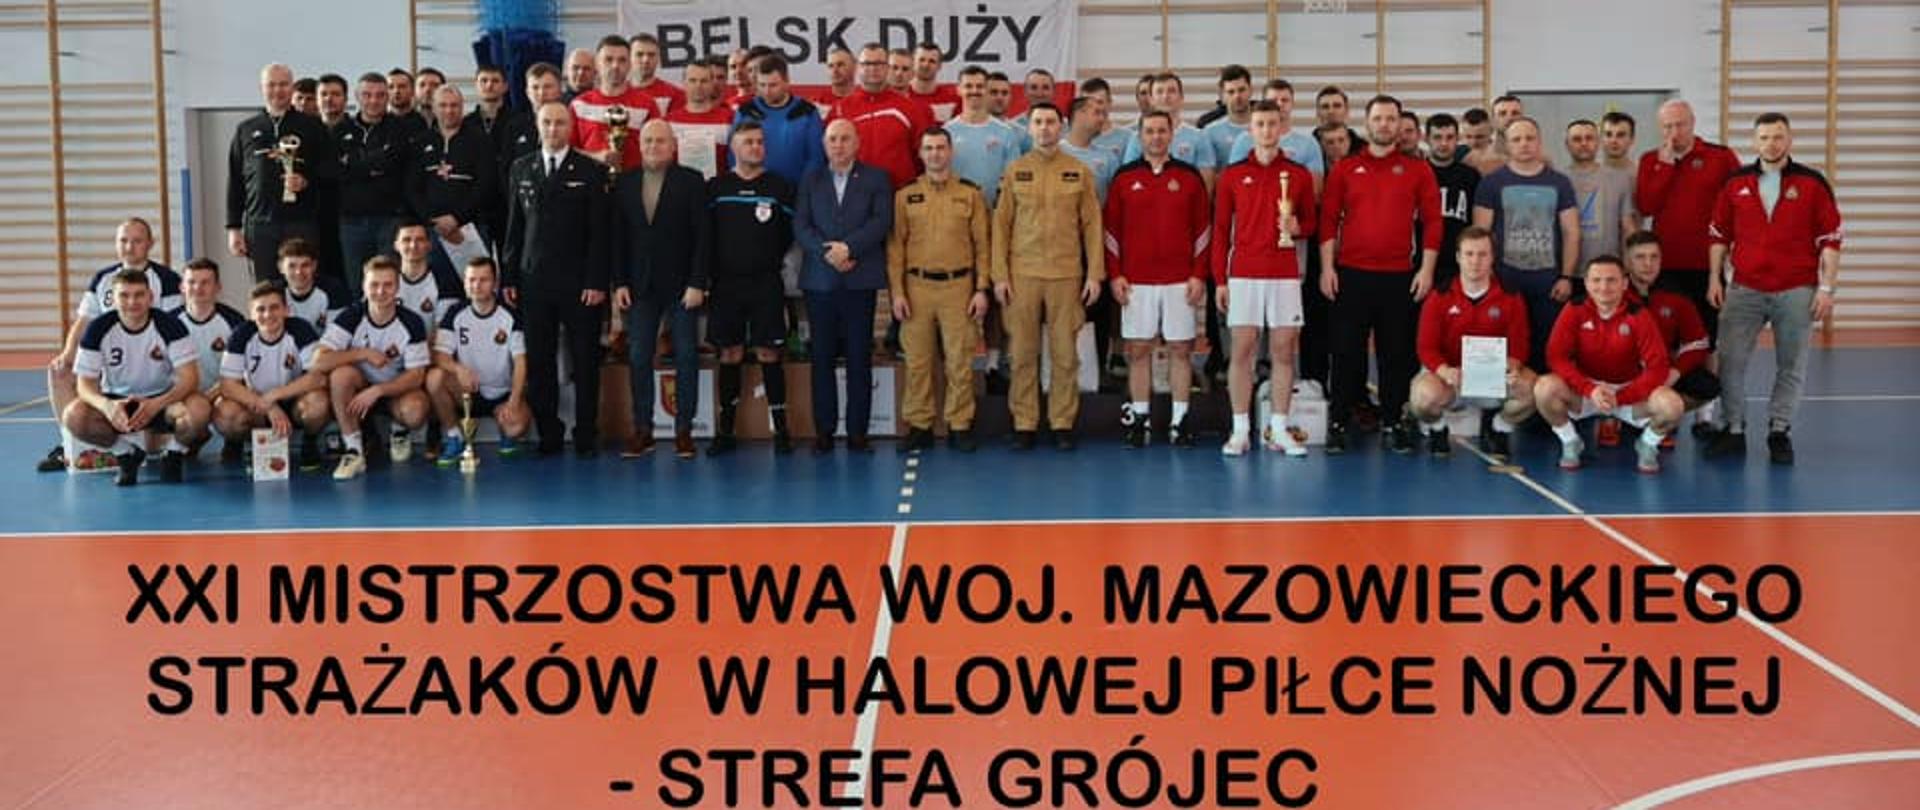 eliminacje strefowe ,,XXI Mistrzostw Województwa Mazowieckiego Strażaków w halowej piłce nożnej” - strefa Grójec. 